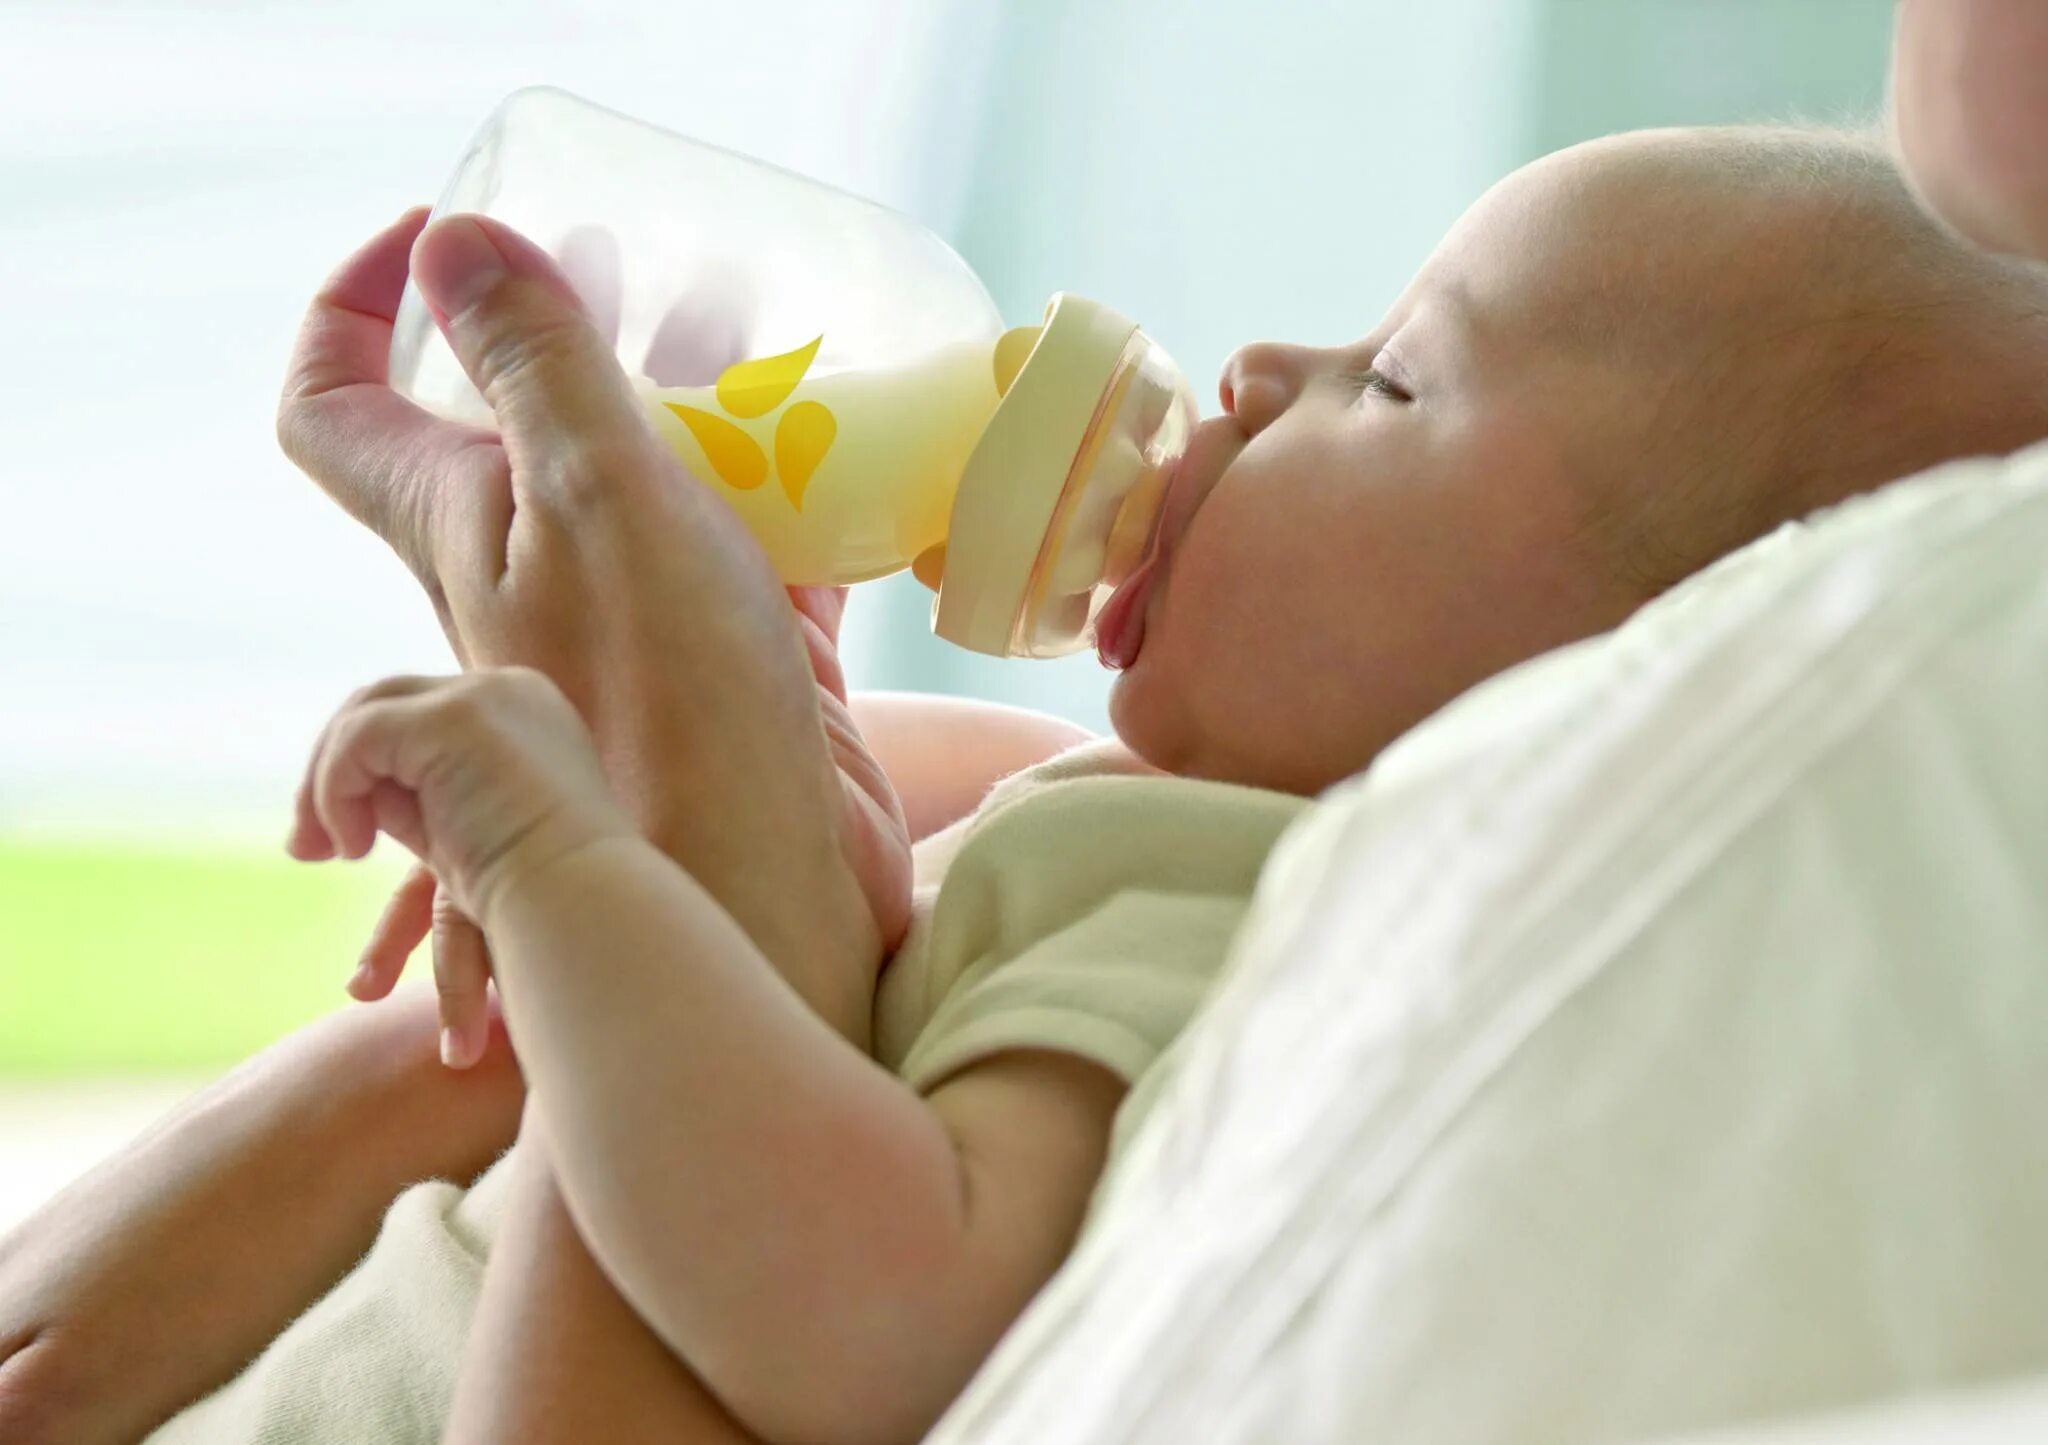 Бутылочка для докорма новорожденного. Грудное и искусственное вскармливание. Кормление ребенка из бутылочки. Кормление новорожденного ребенка из бутылочки.